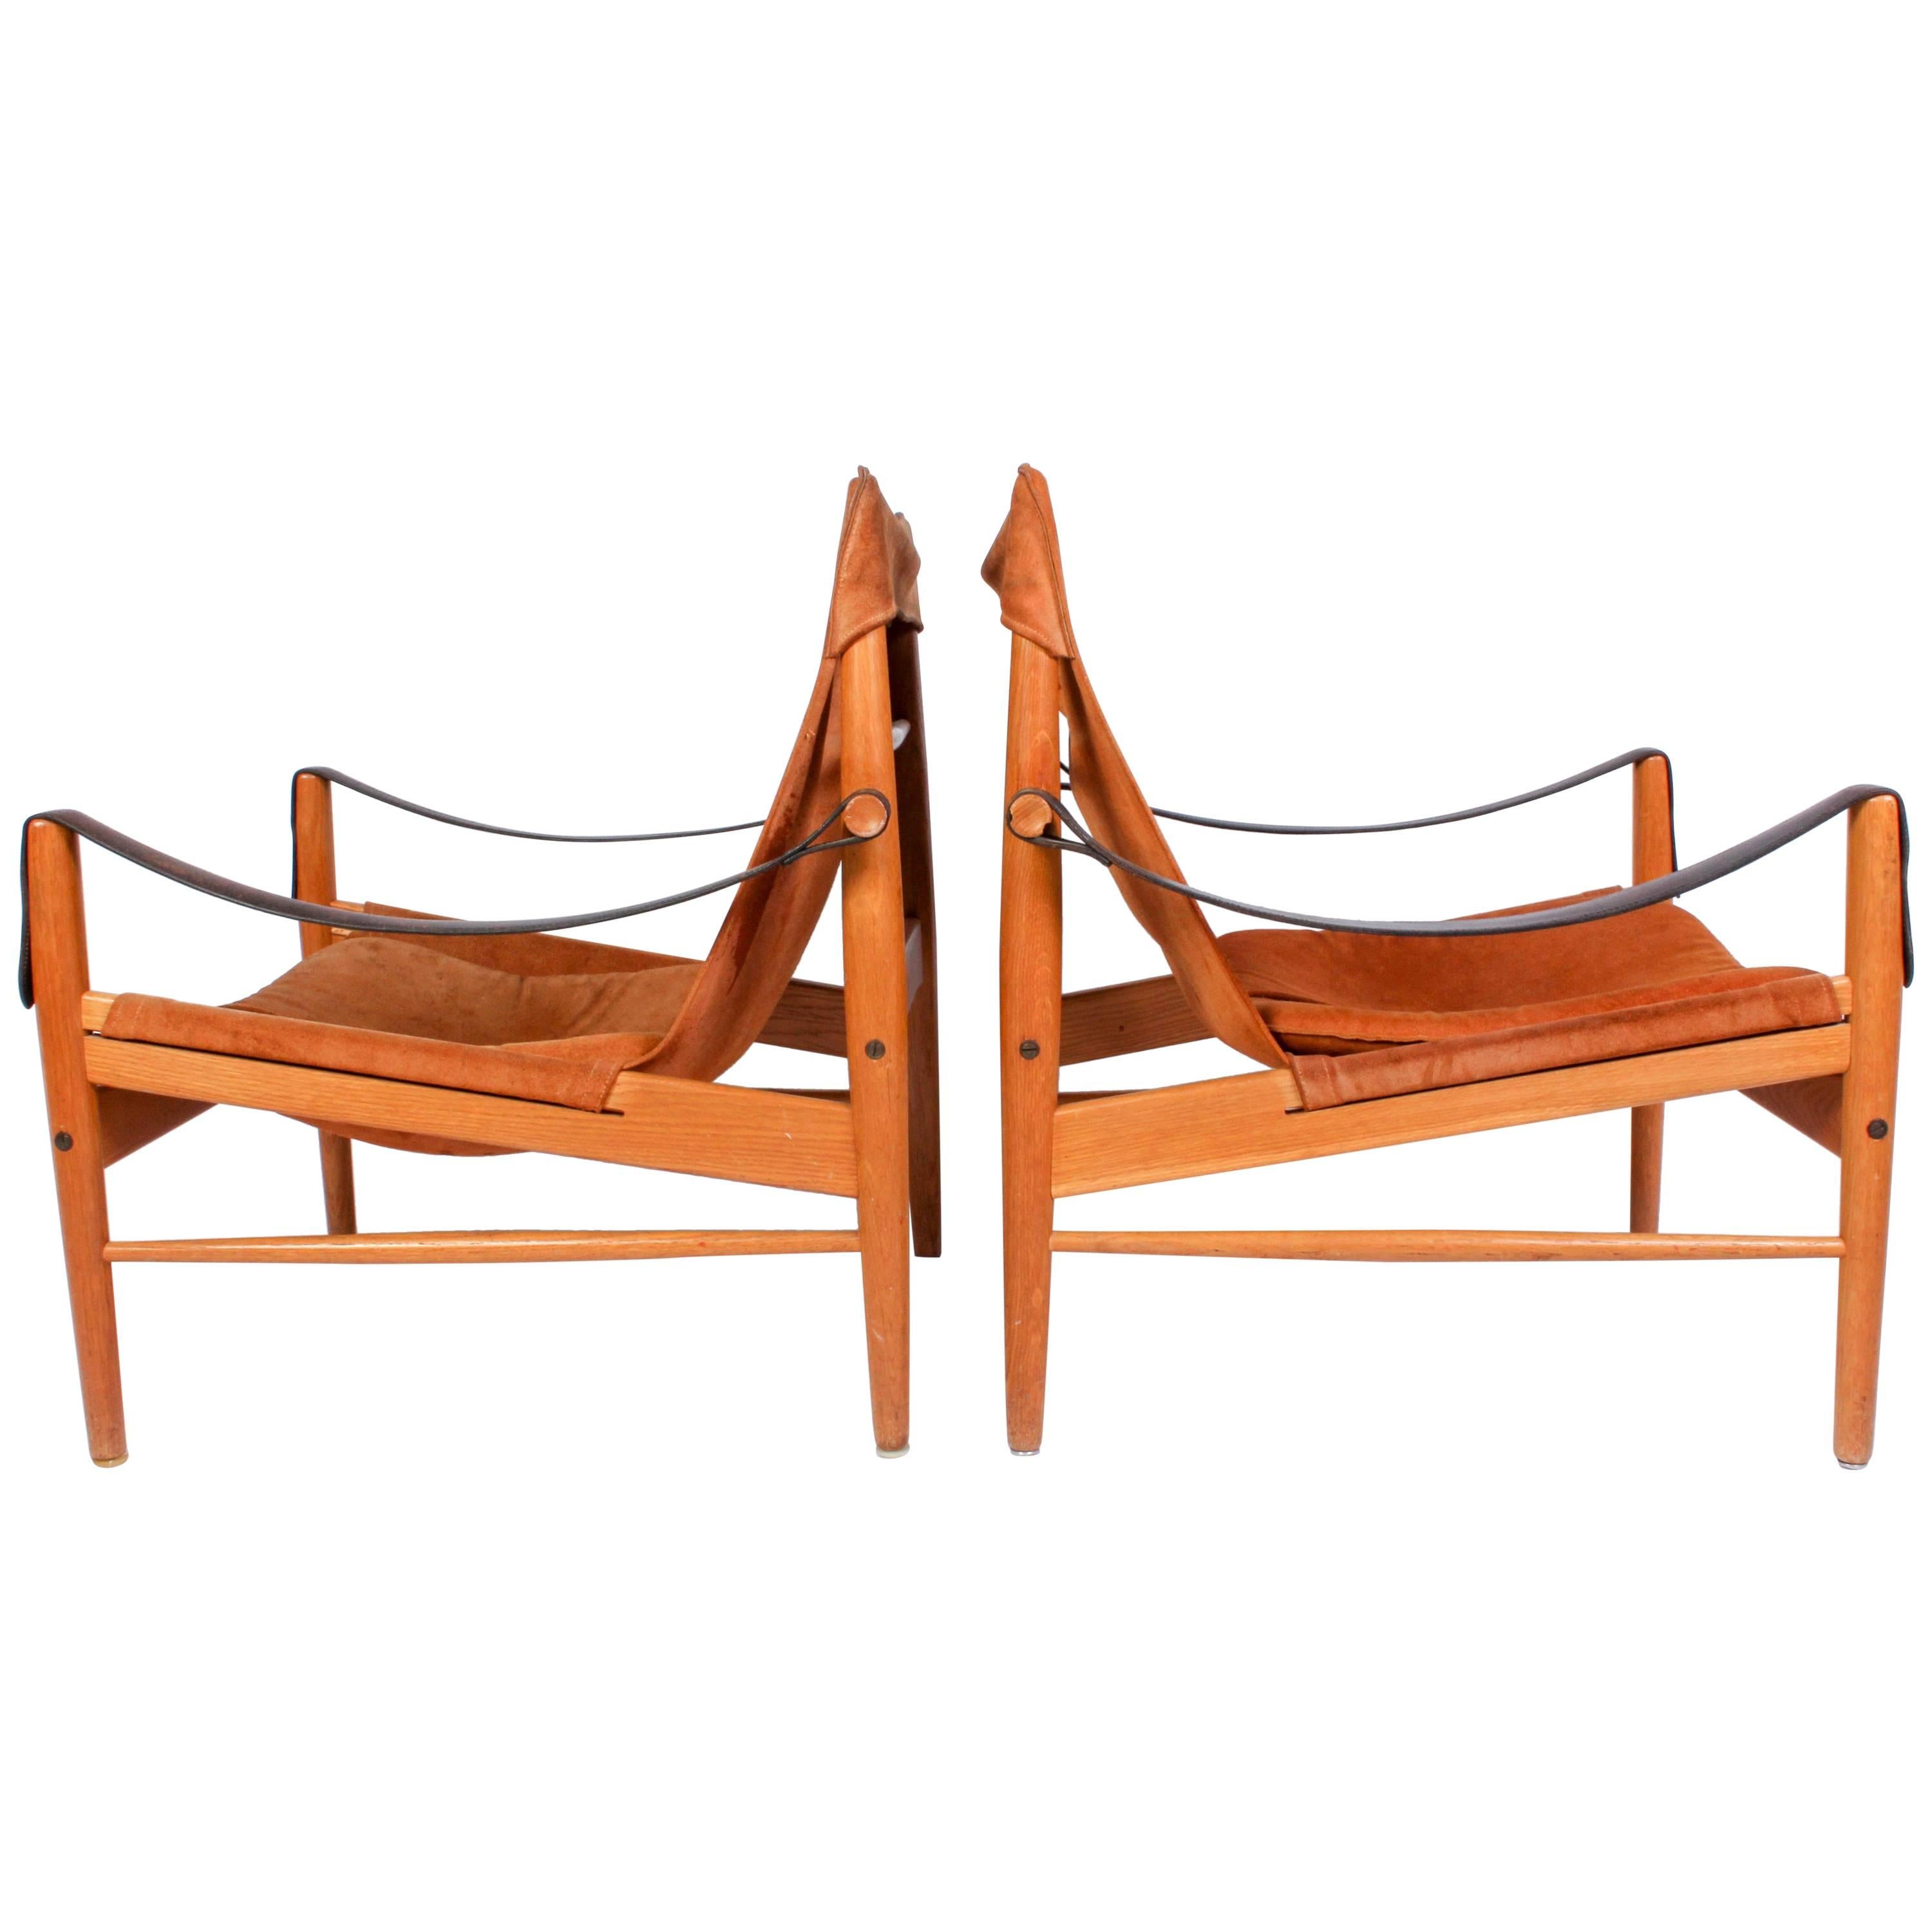 Pair of Hans Olsen "Antilop" Suede and Oak Lounge Chairs by Viskadalens Möbler